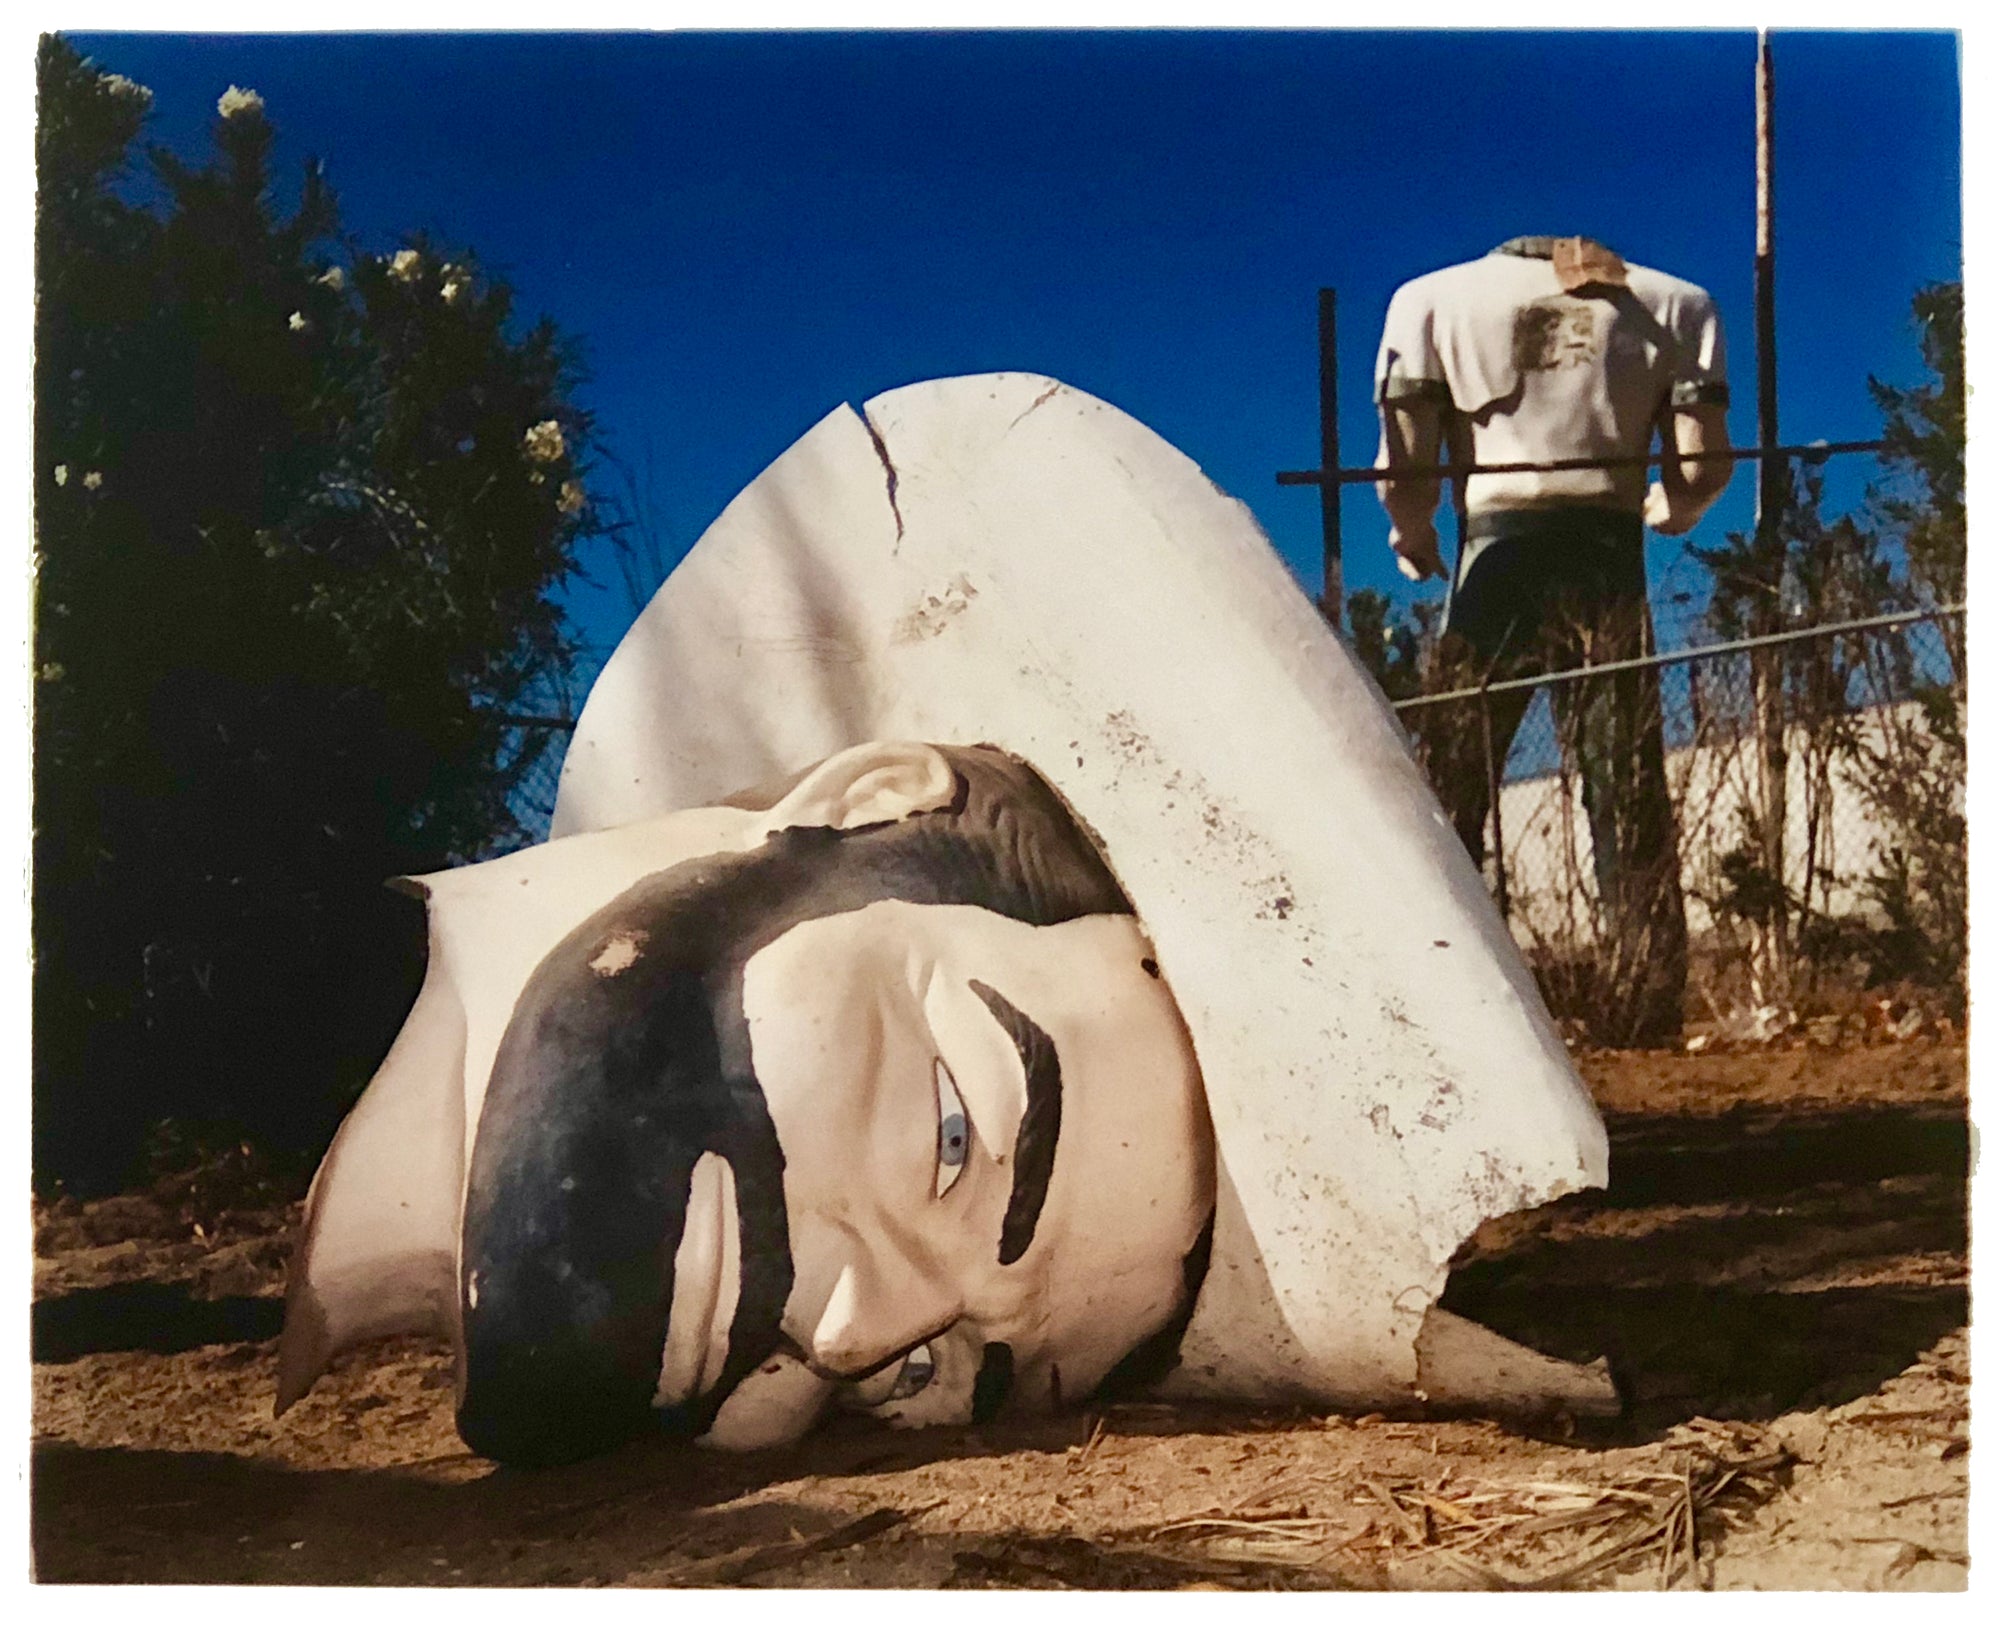 Poor Richard Head & Torso, Salton Sea, California, 2003